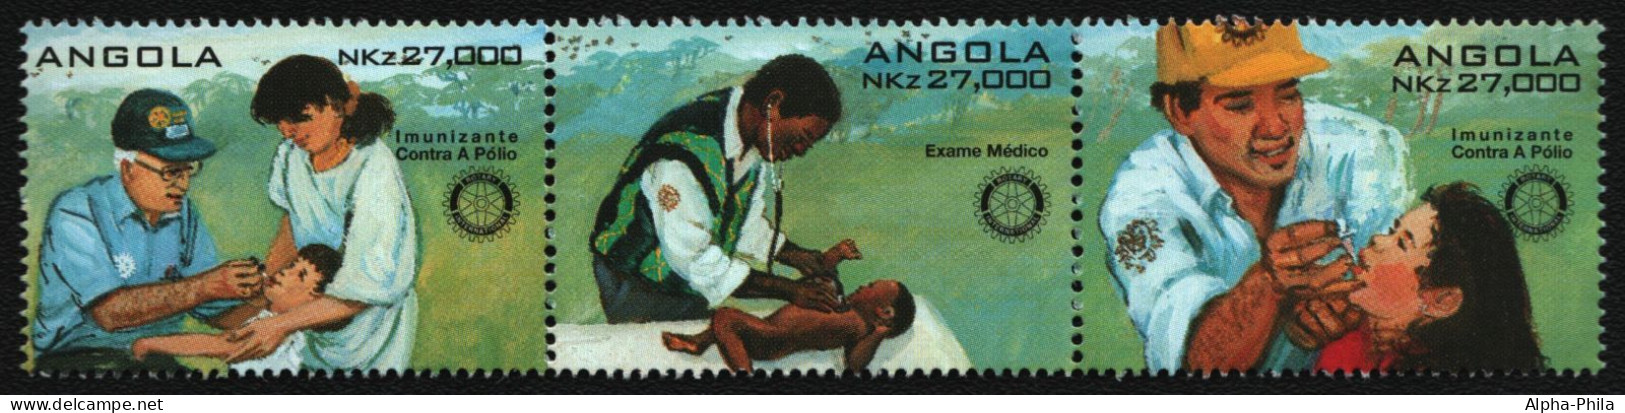 Angola 1995 - Mi-Nr. 992-994 ** - MNH - Rotary - Angola